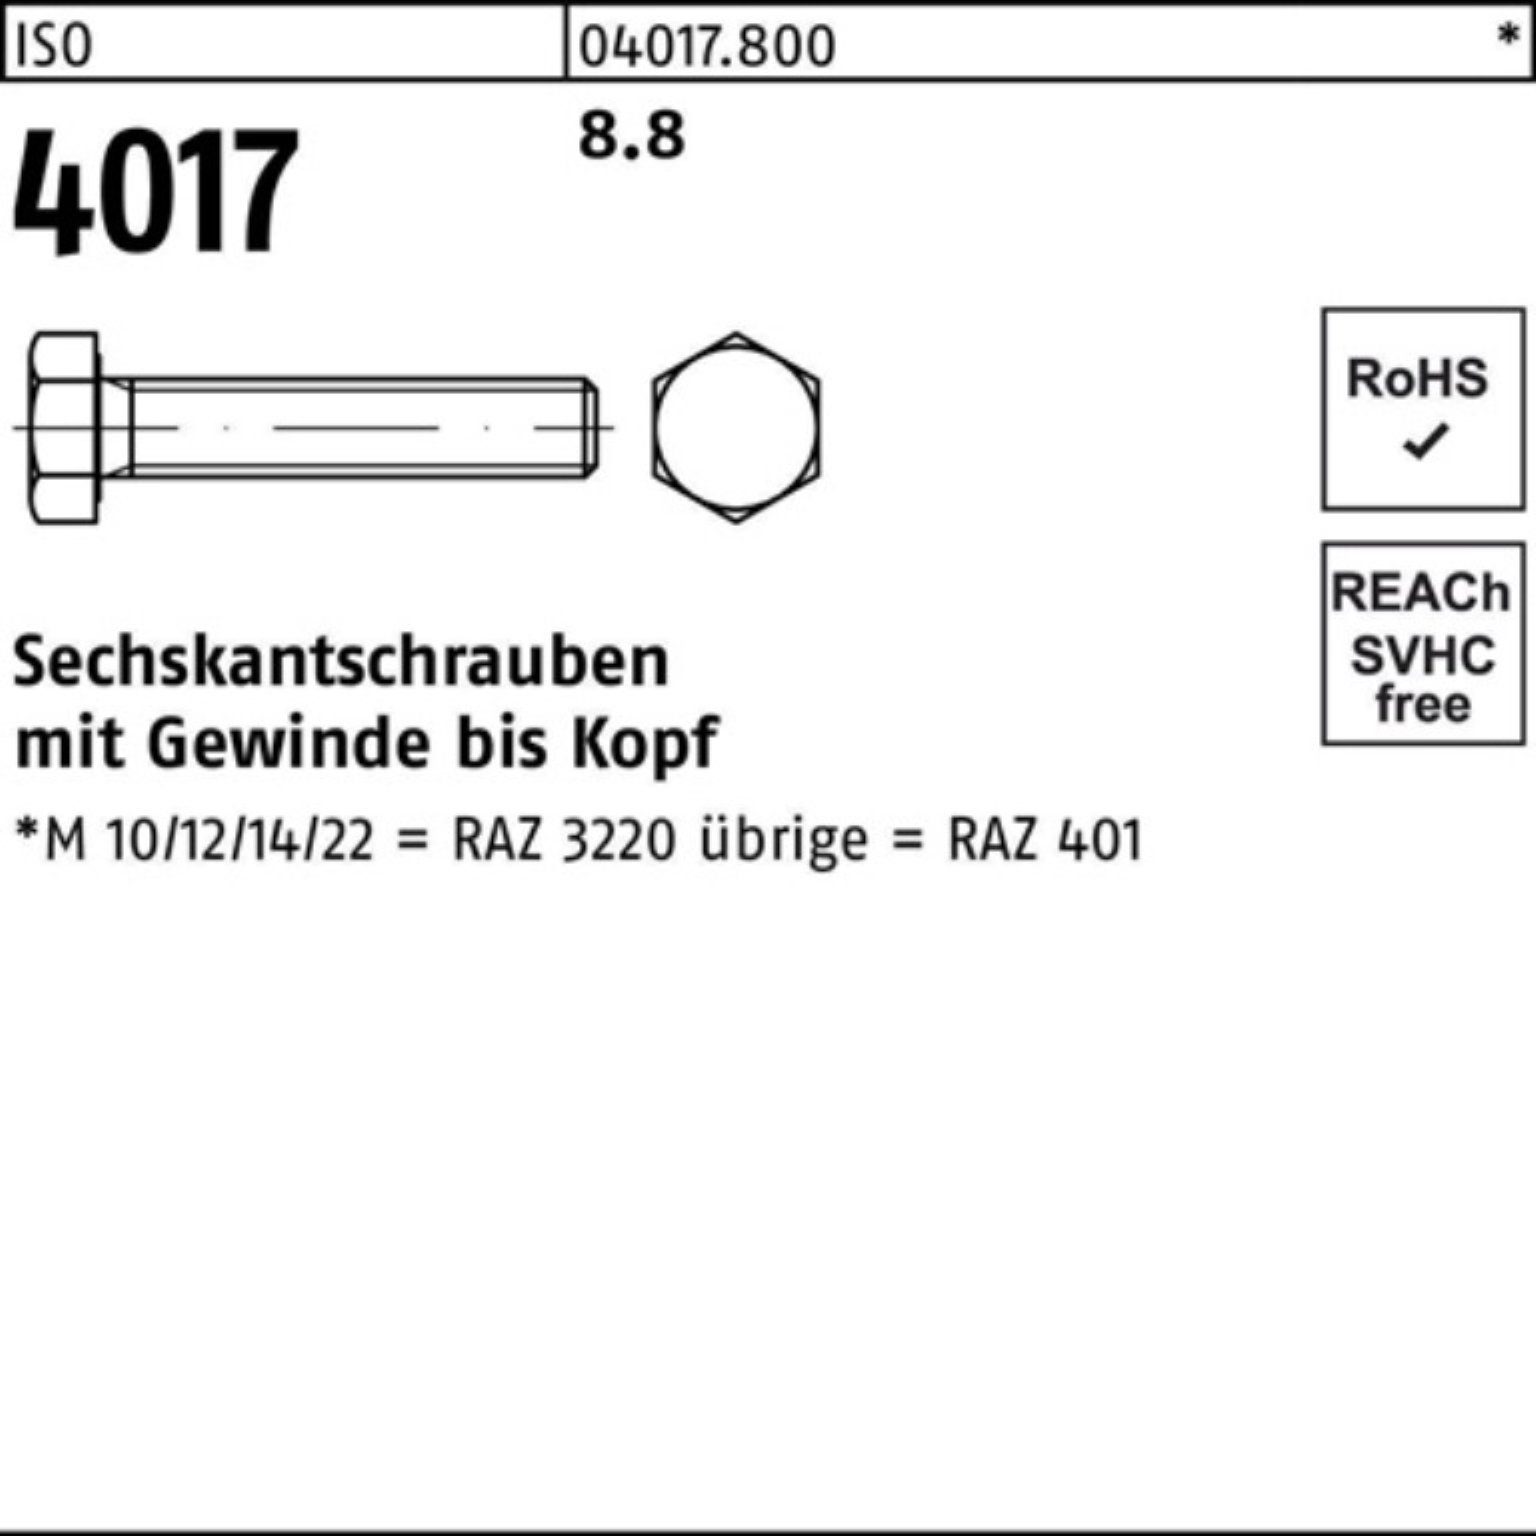 Bufab Sechskantschraube 100er Pack Sechskantschraube 8.8 M48x VG ISO ISO 401 Stück 110 4017 1